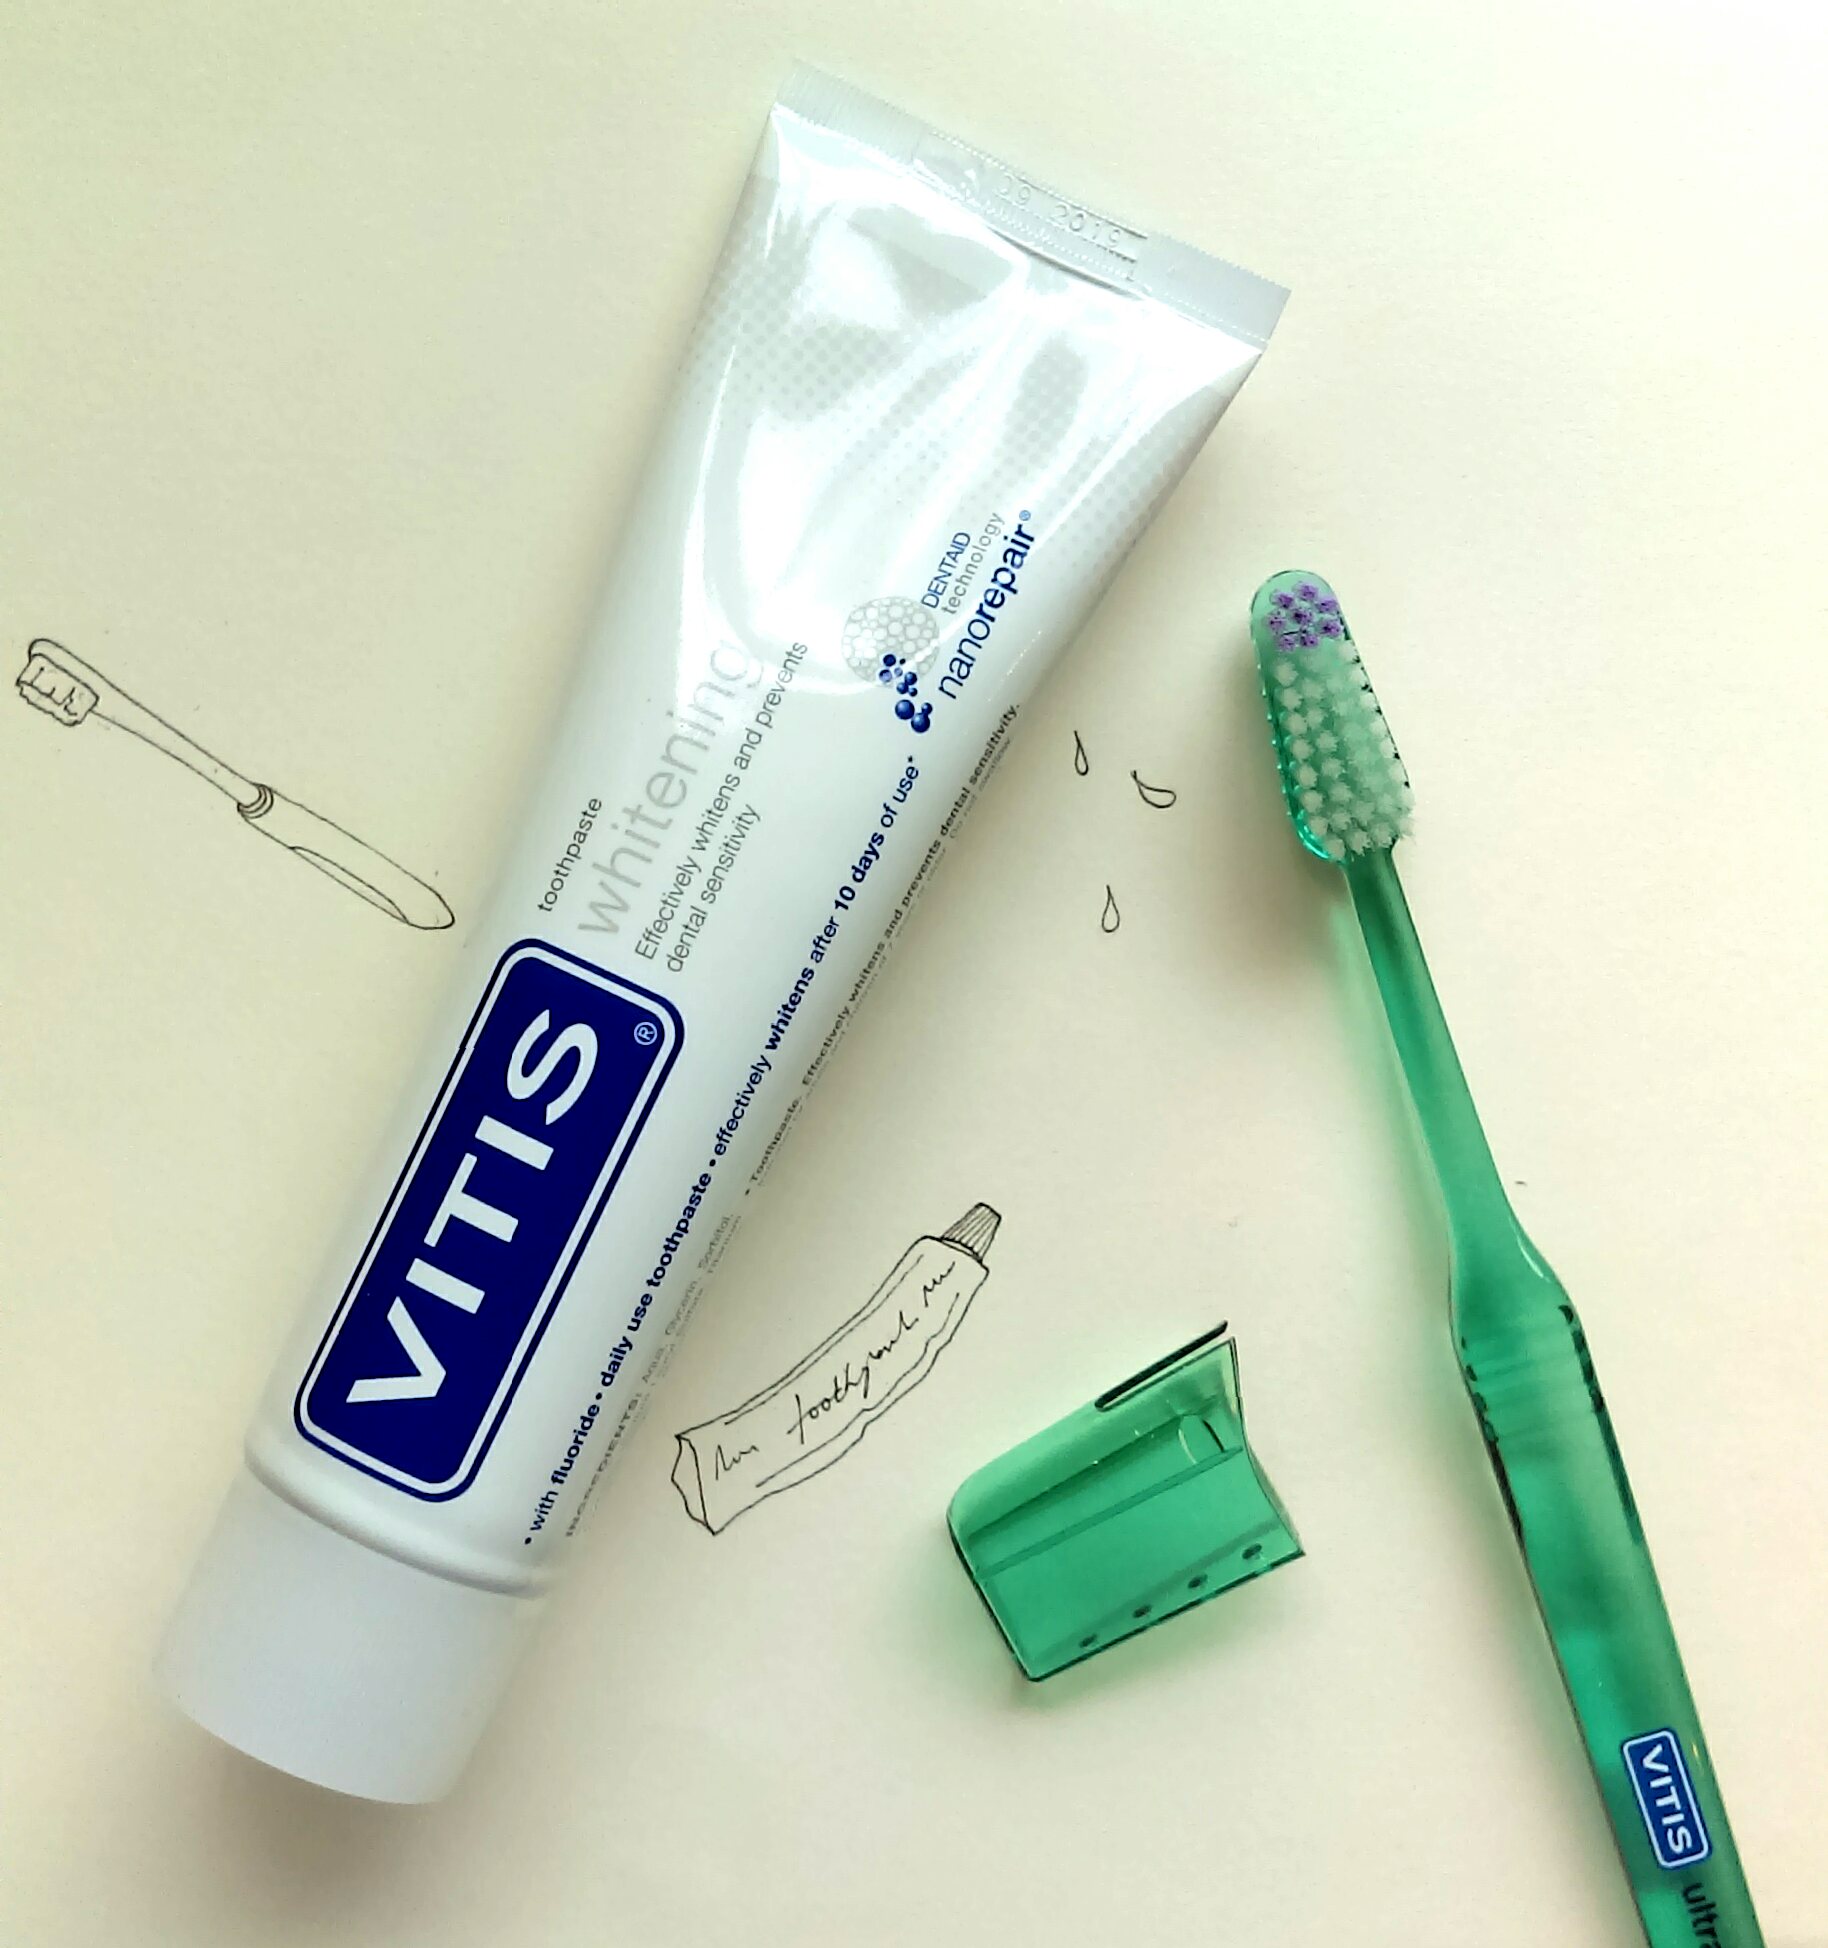 Dentaid’s Vitis Whitening Toothpaste